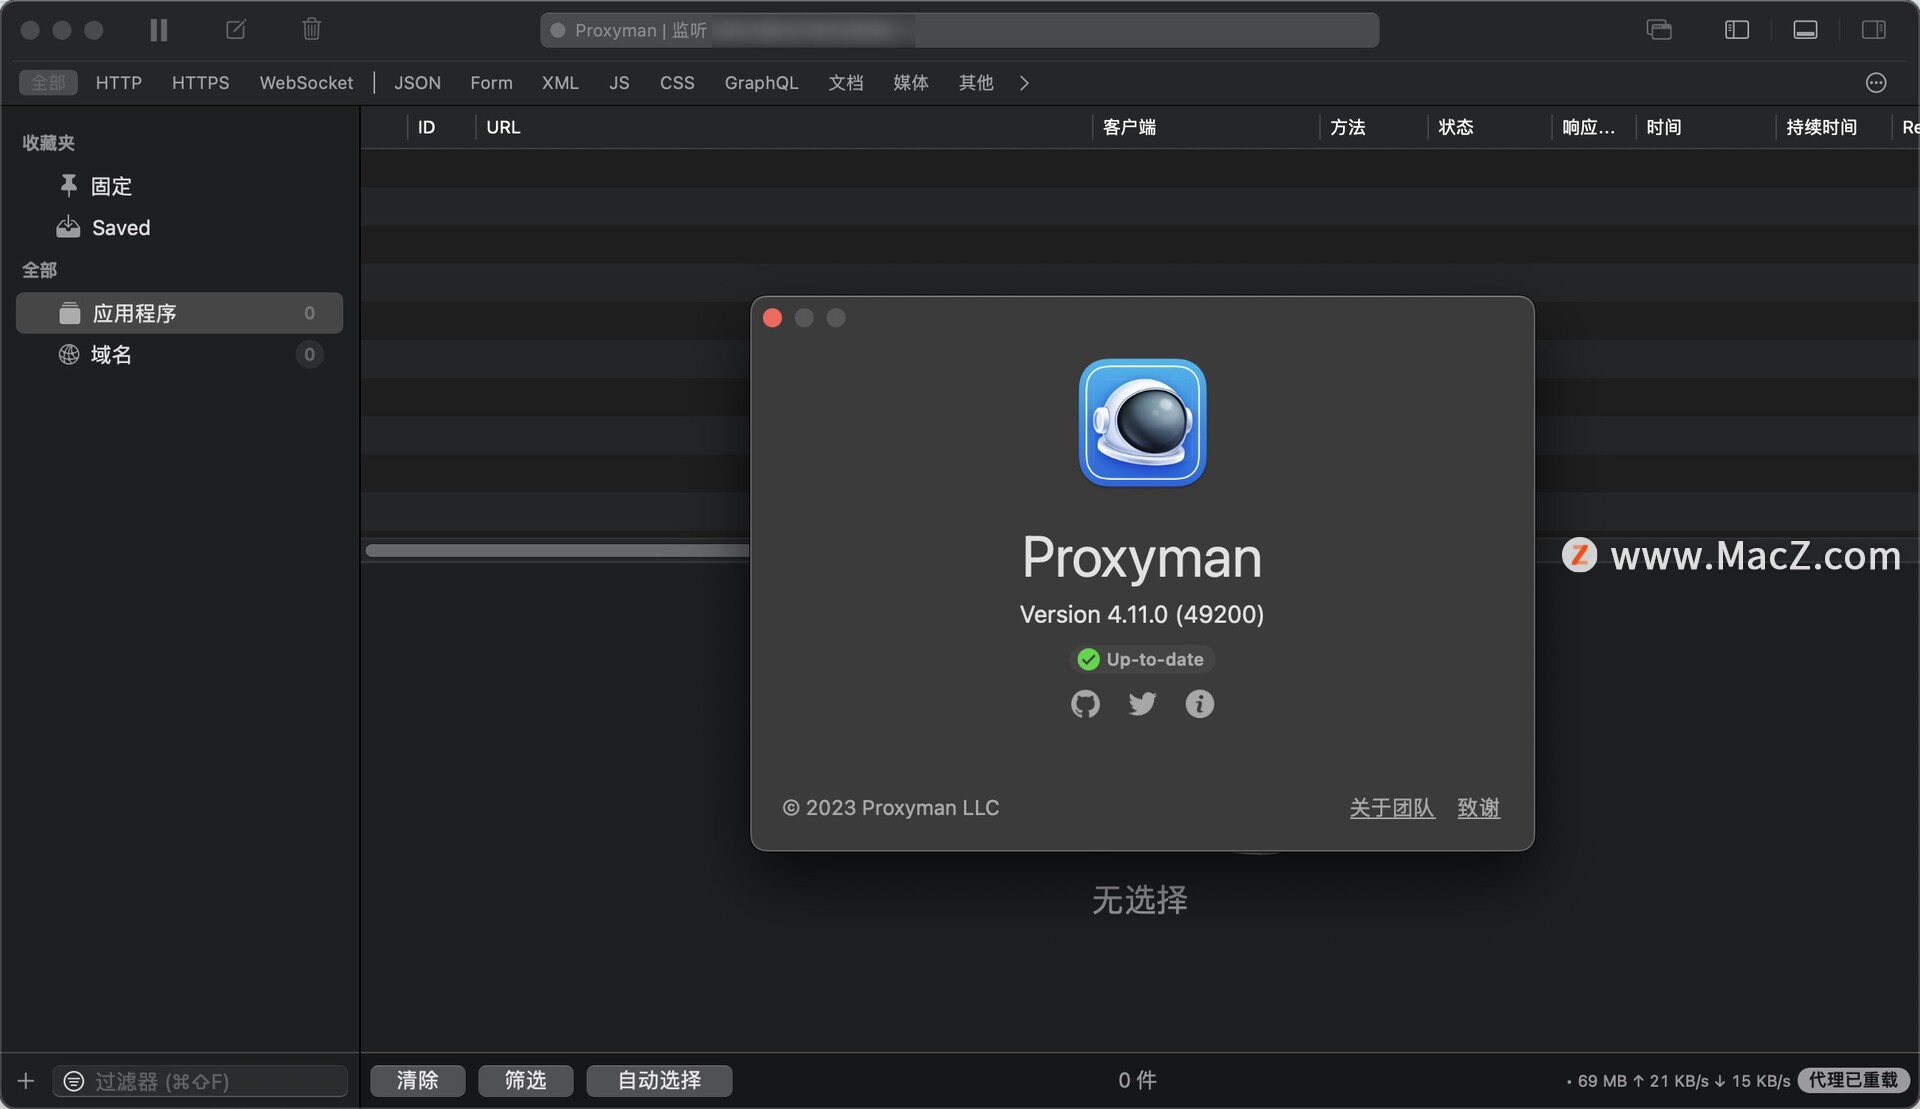 网络代理工具软件Proxyman mac中文版功能特点